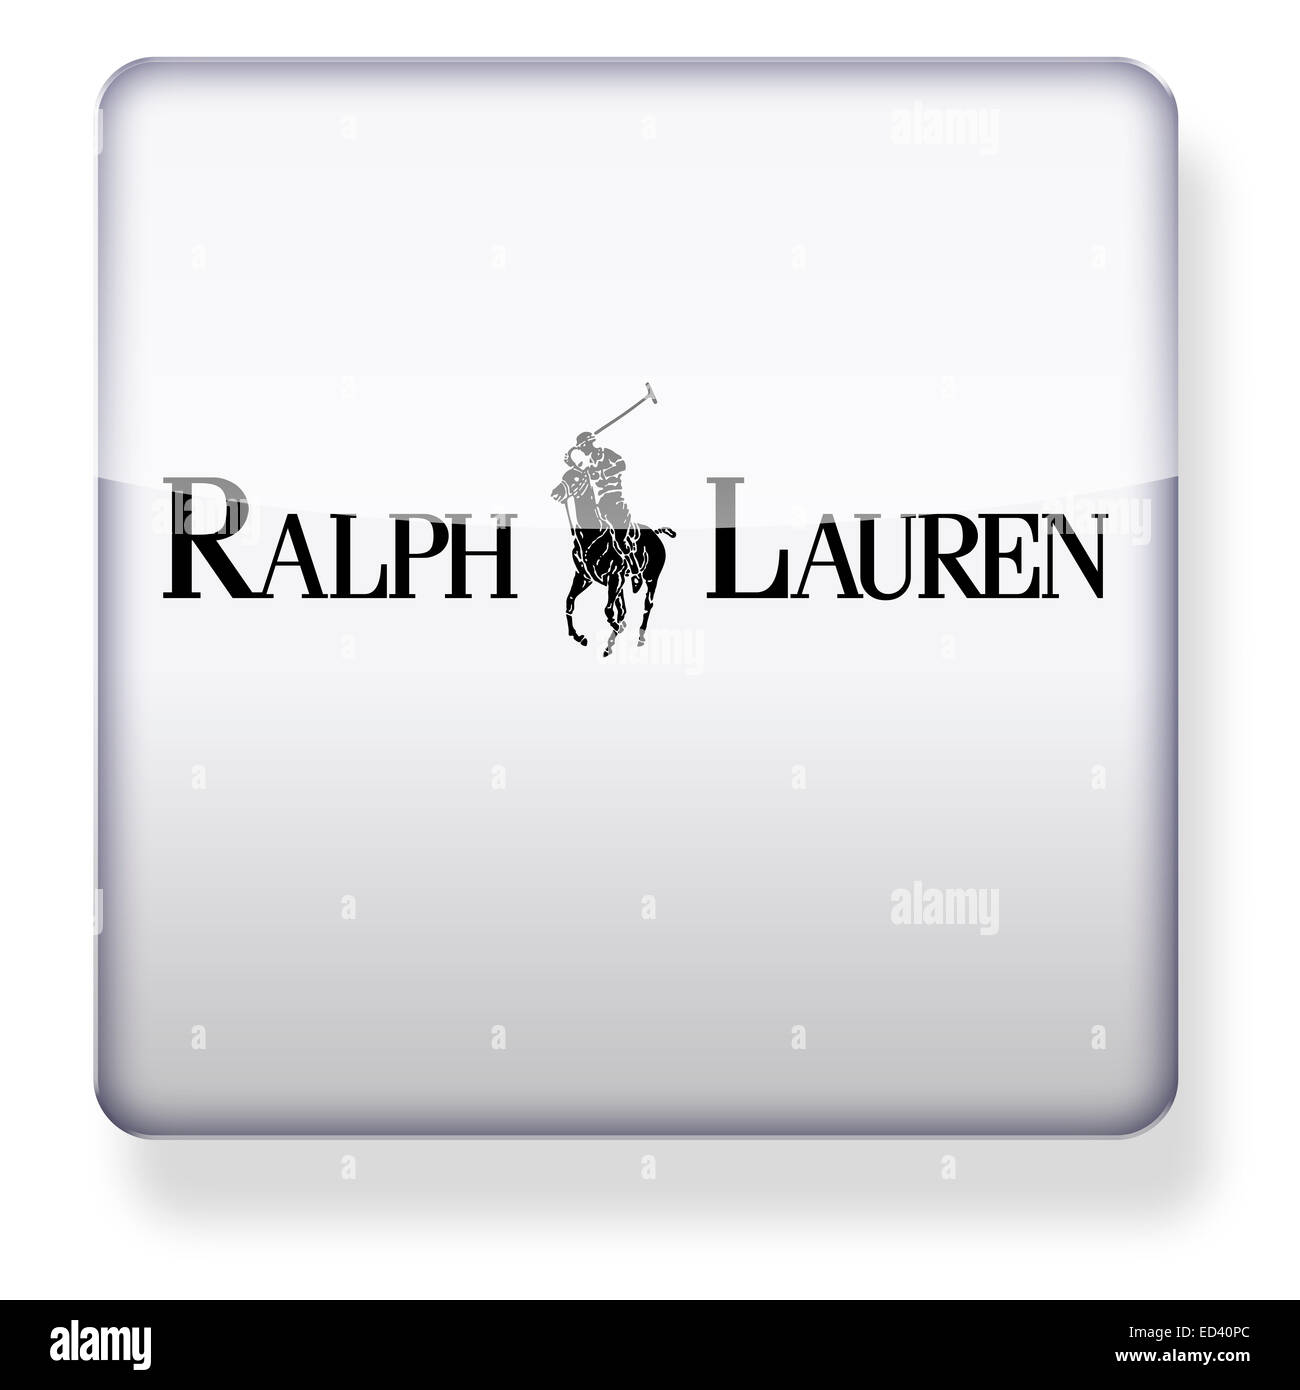 Ralph lauren logo Banque de photographies et d'images à haute résolution -  Alamy